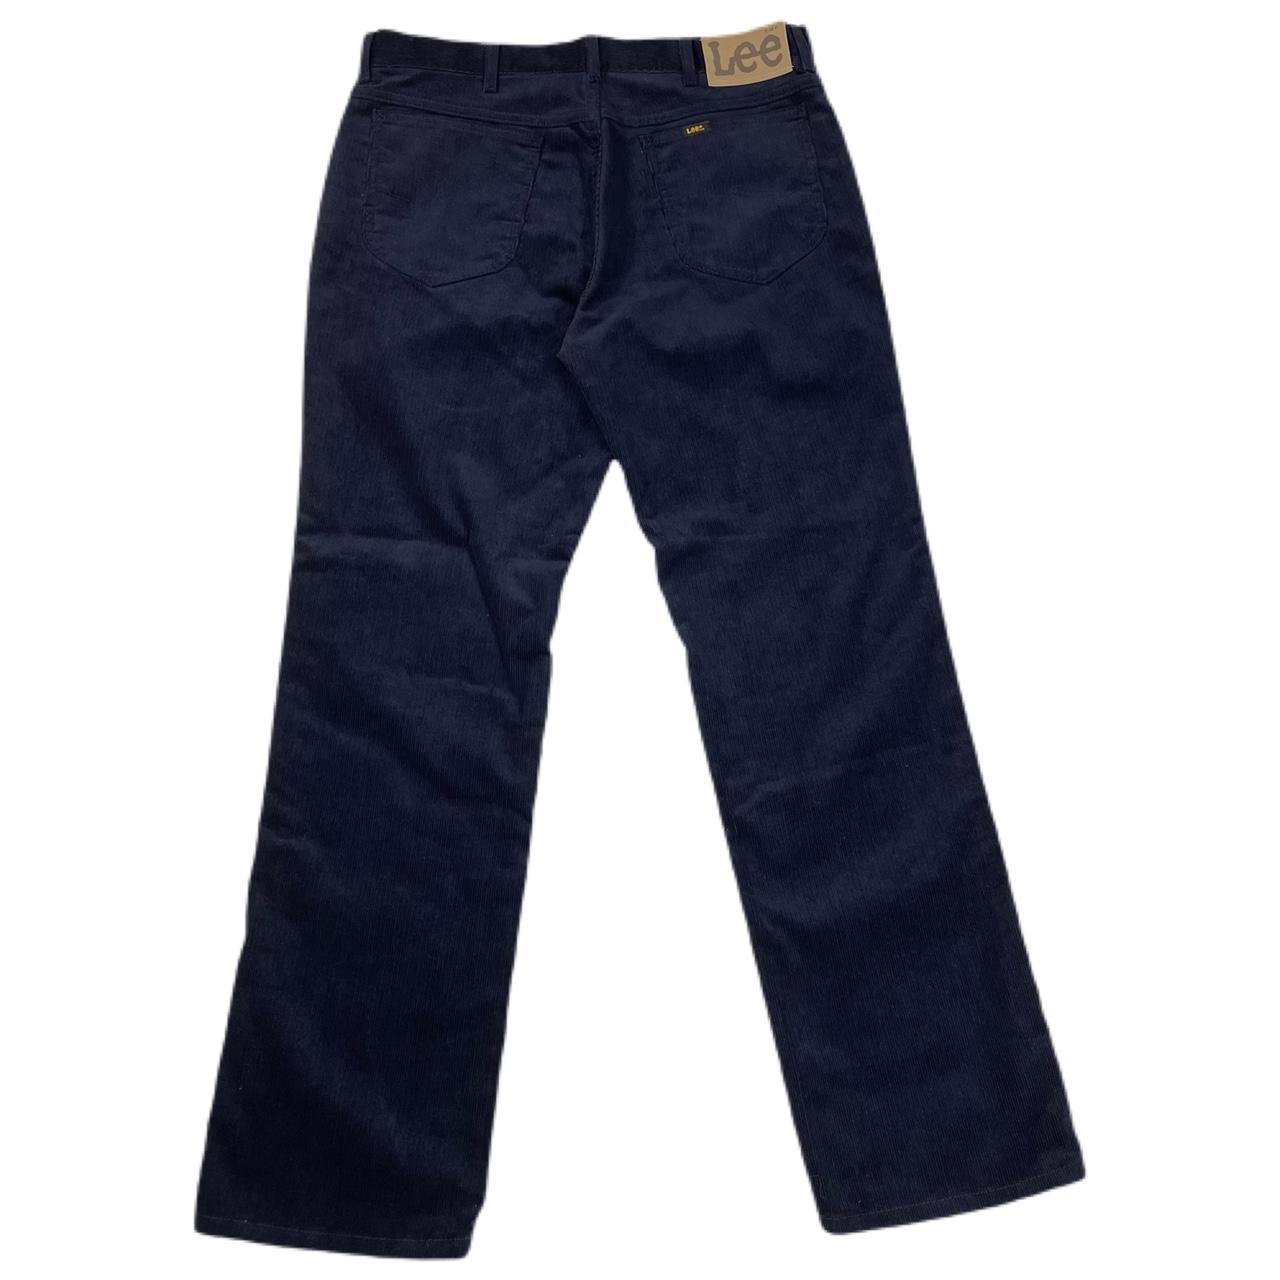 Vintage Lee navy blue corduroy straight fit pants •... - Depop